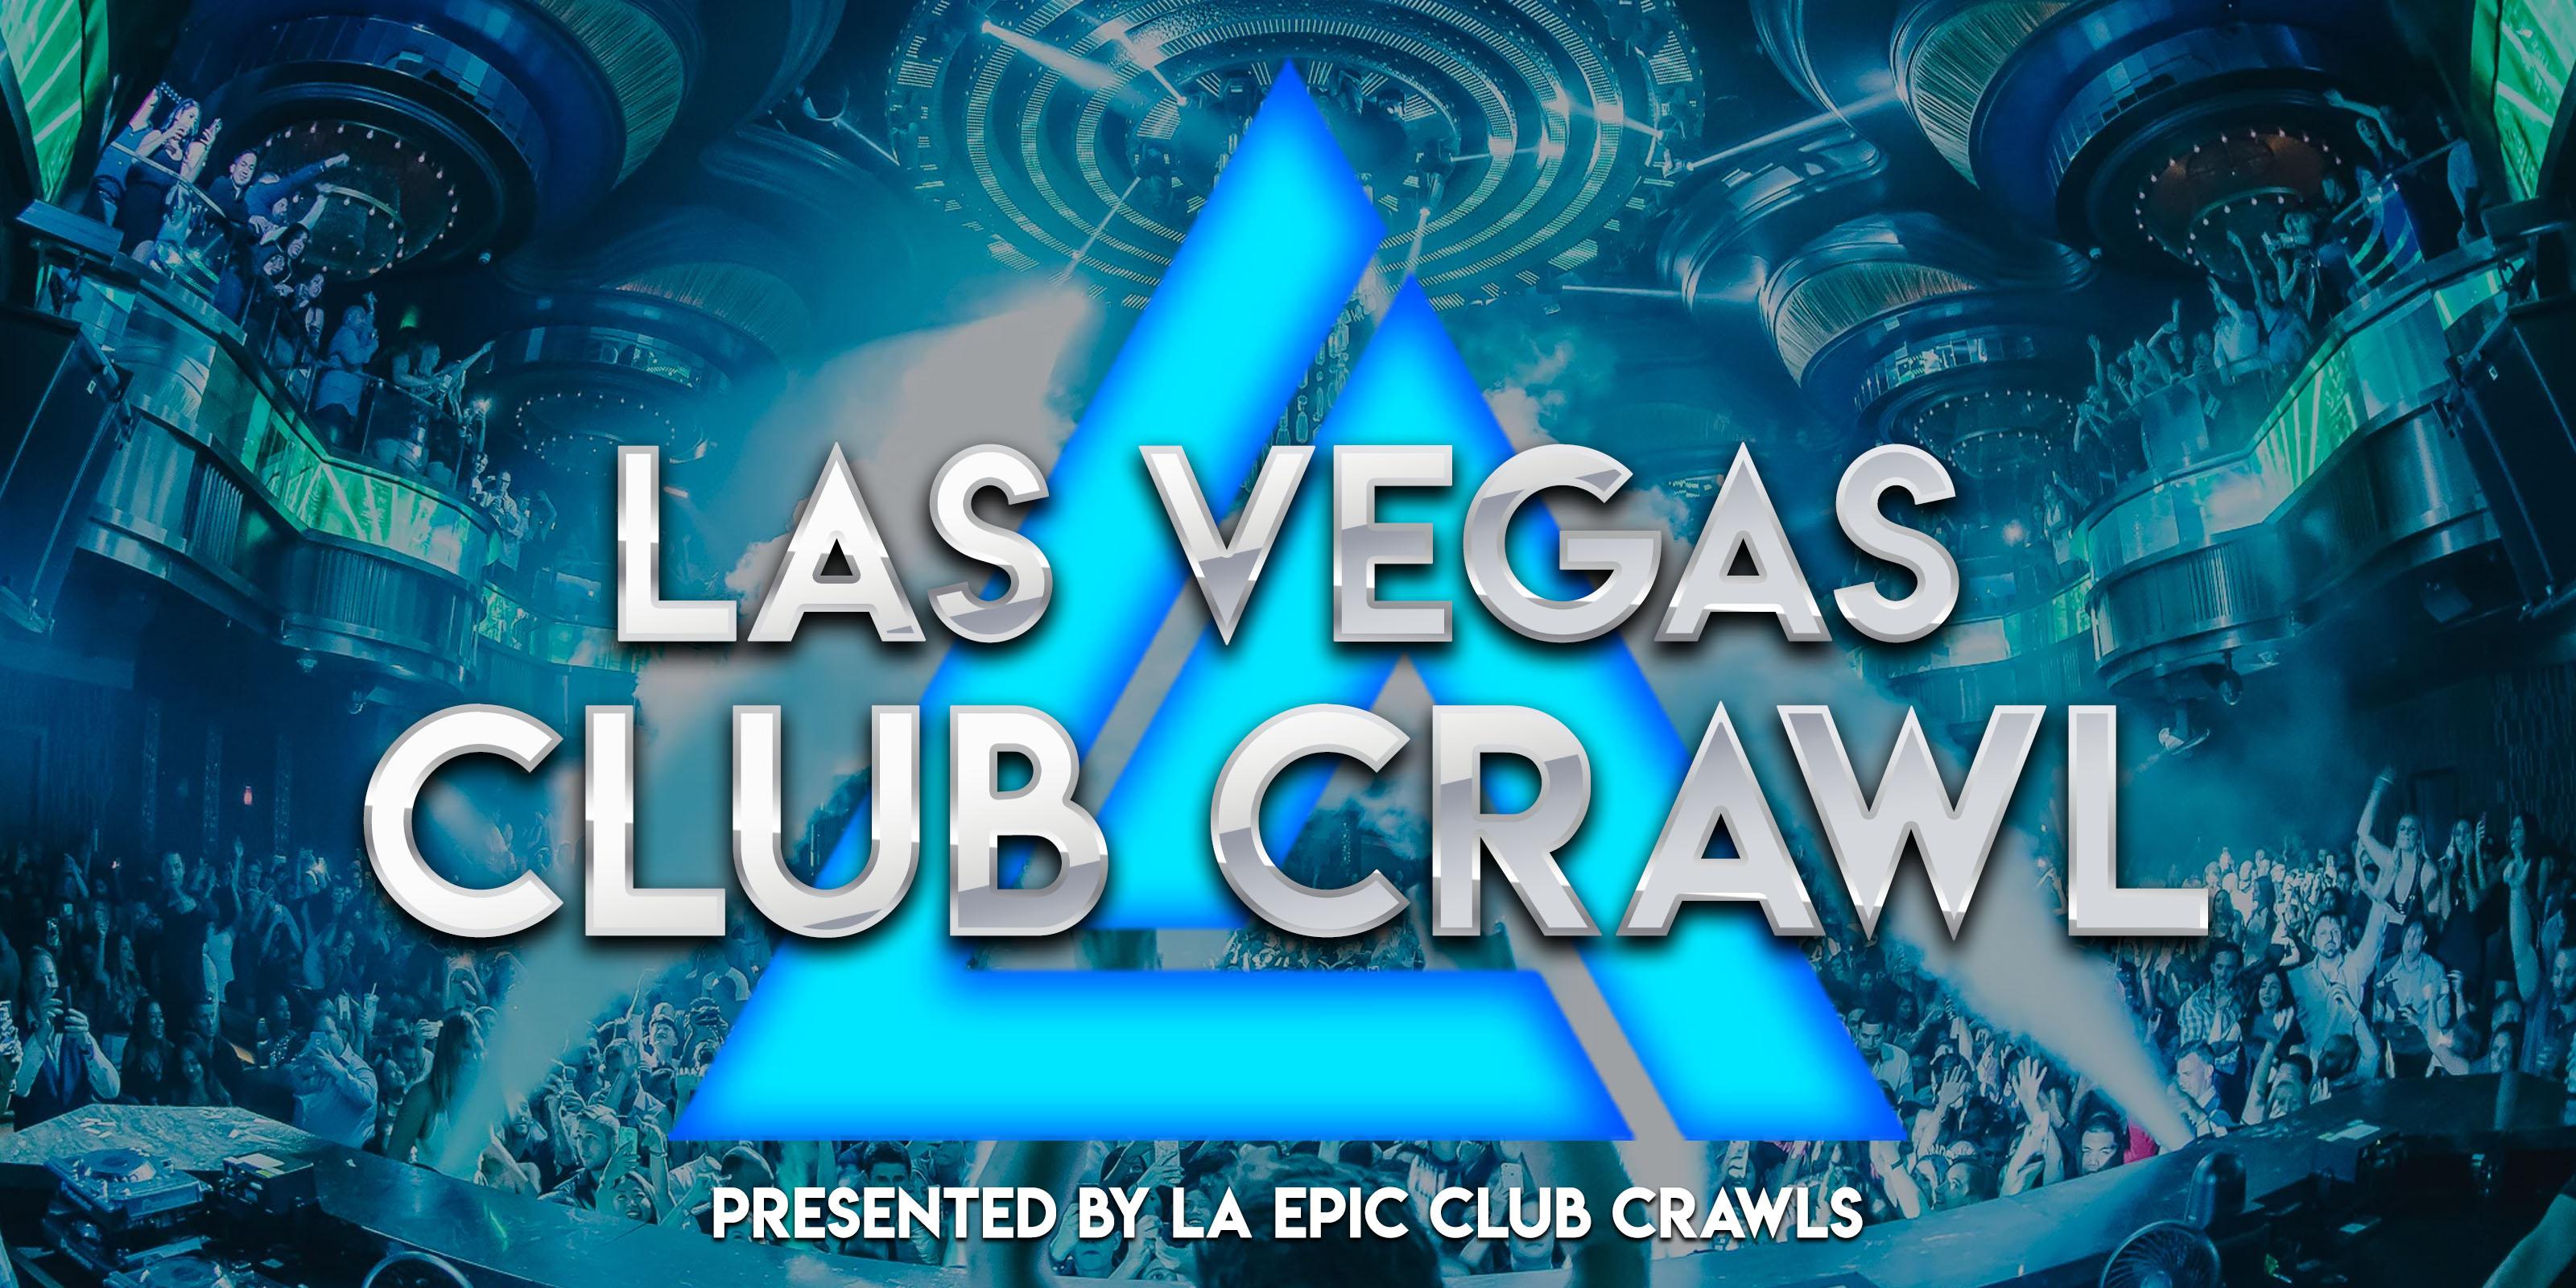 Las Vegas Club Crawl